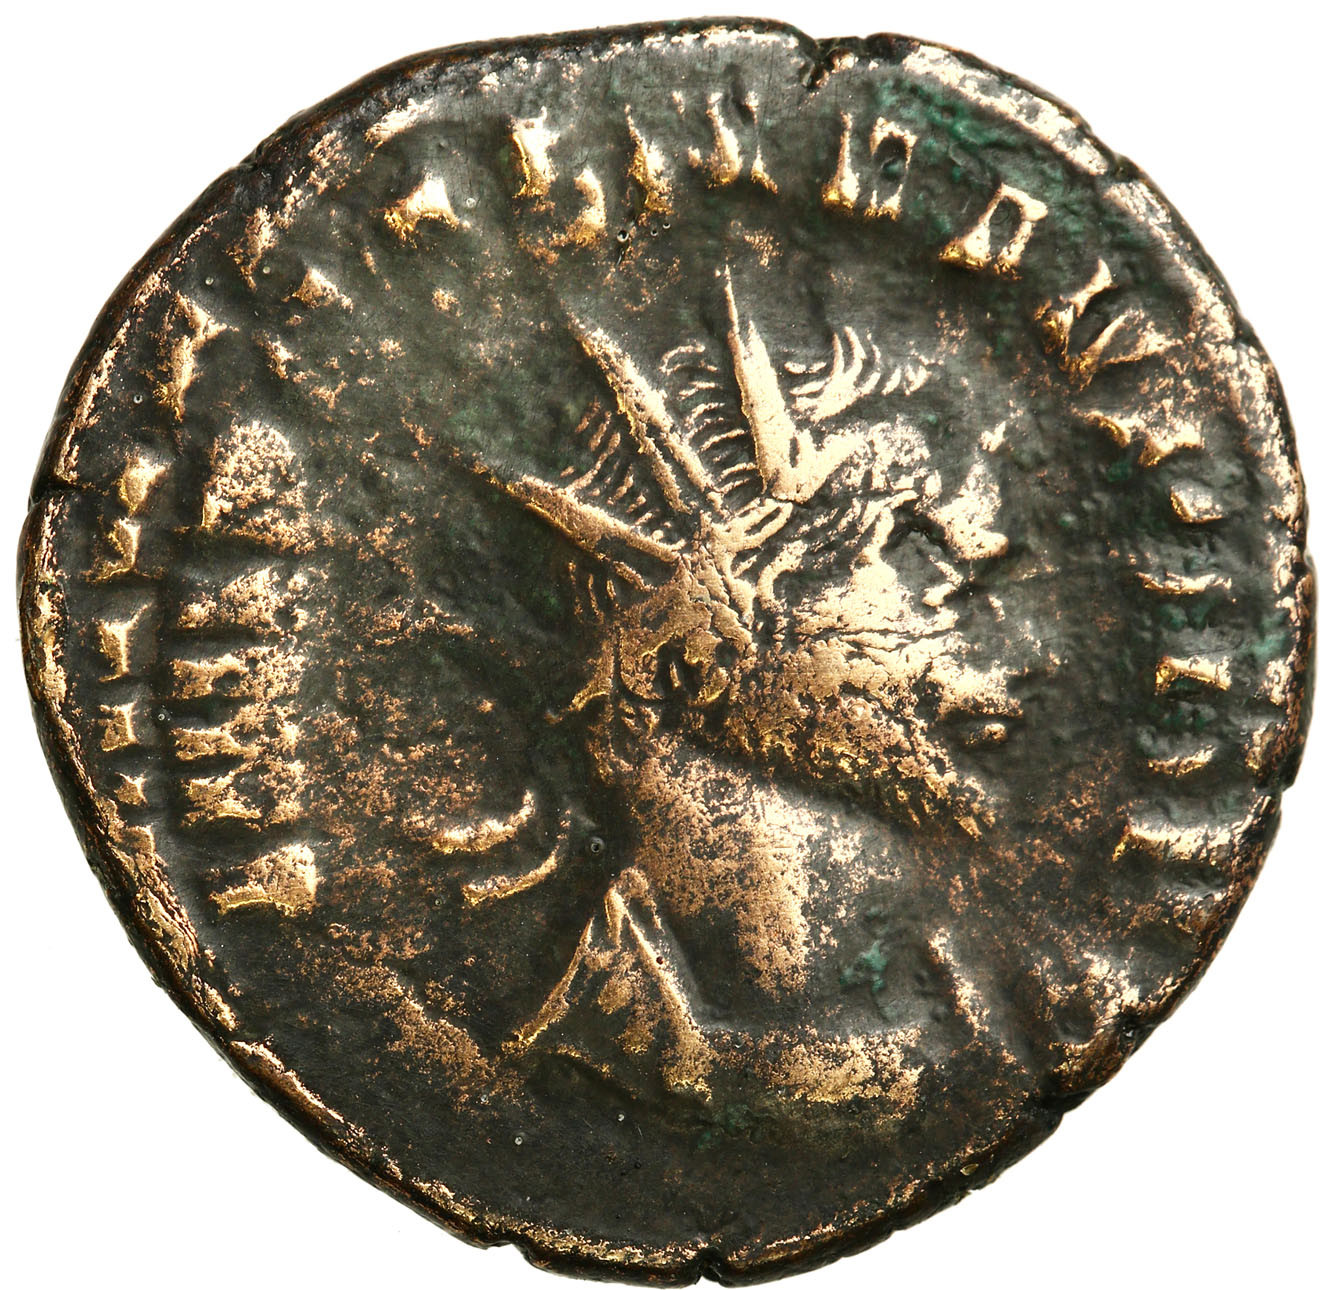 Cesarstwo Rzymskie, Antoninian Bilonowy, Klaudiusz II Gocki 268 - 270 n.e., Rzym